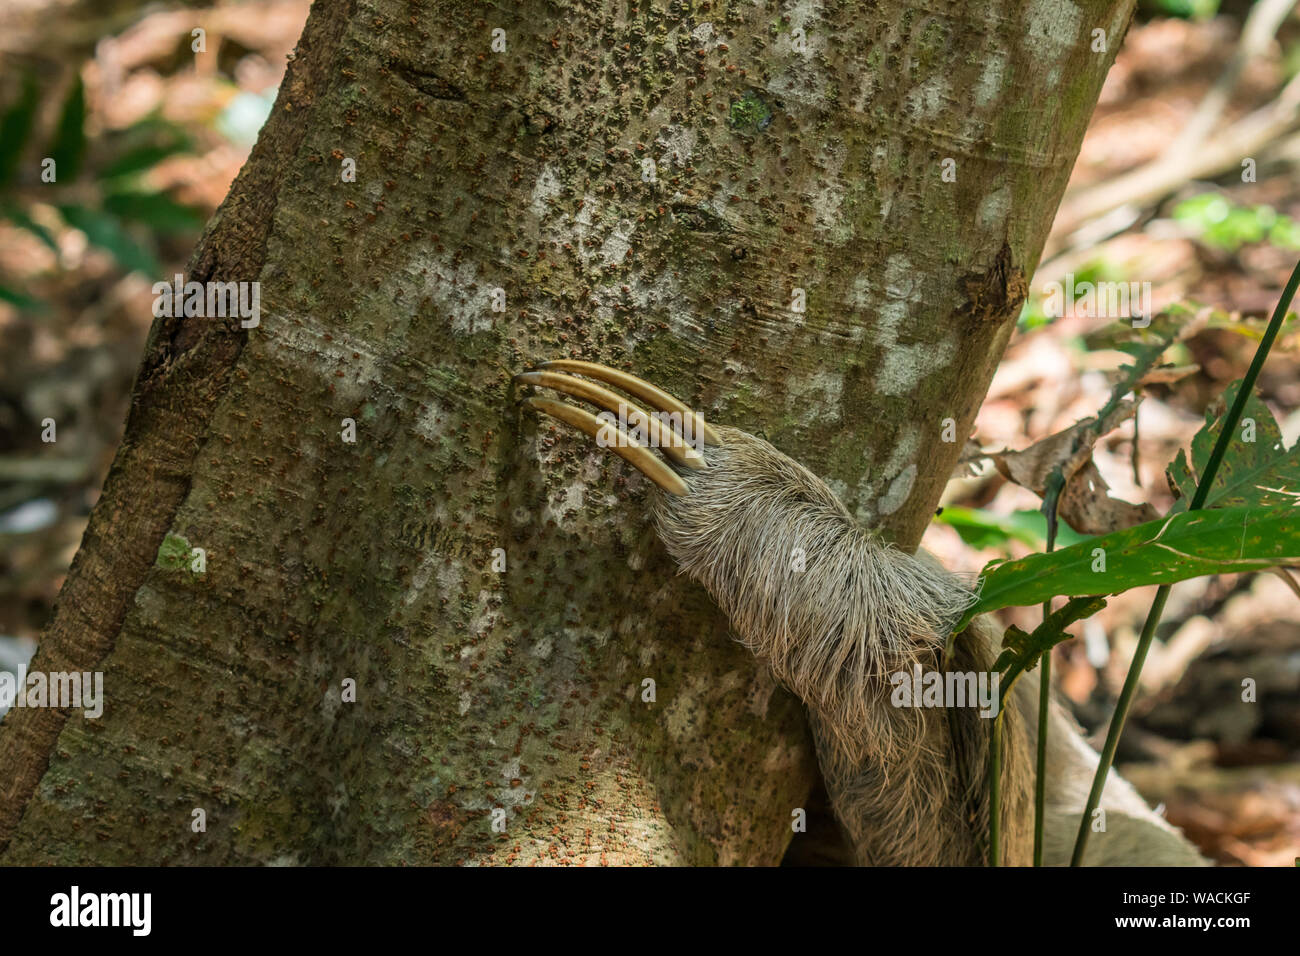 Nahaufnahme der Klaue der ein faultier (Bradypus variegatus) auf einem Baum in den Atlantischen Regenwald - Insel Itamaraca, Pernambuco, Brasilien Stockfoto